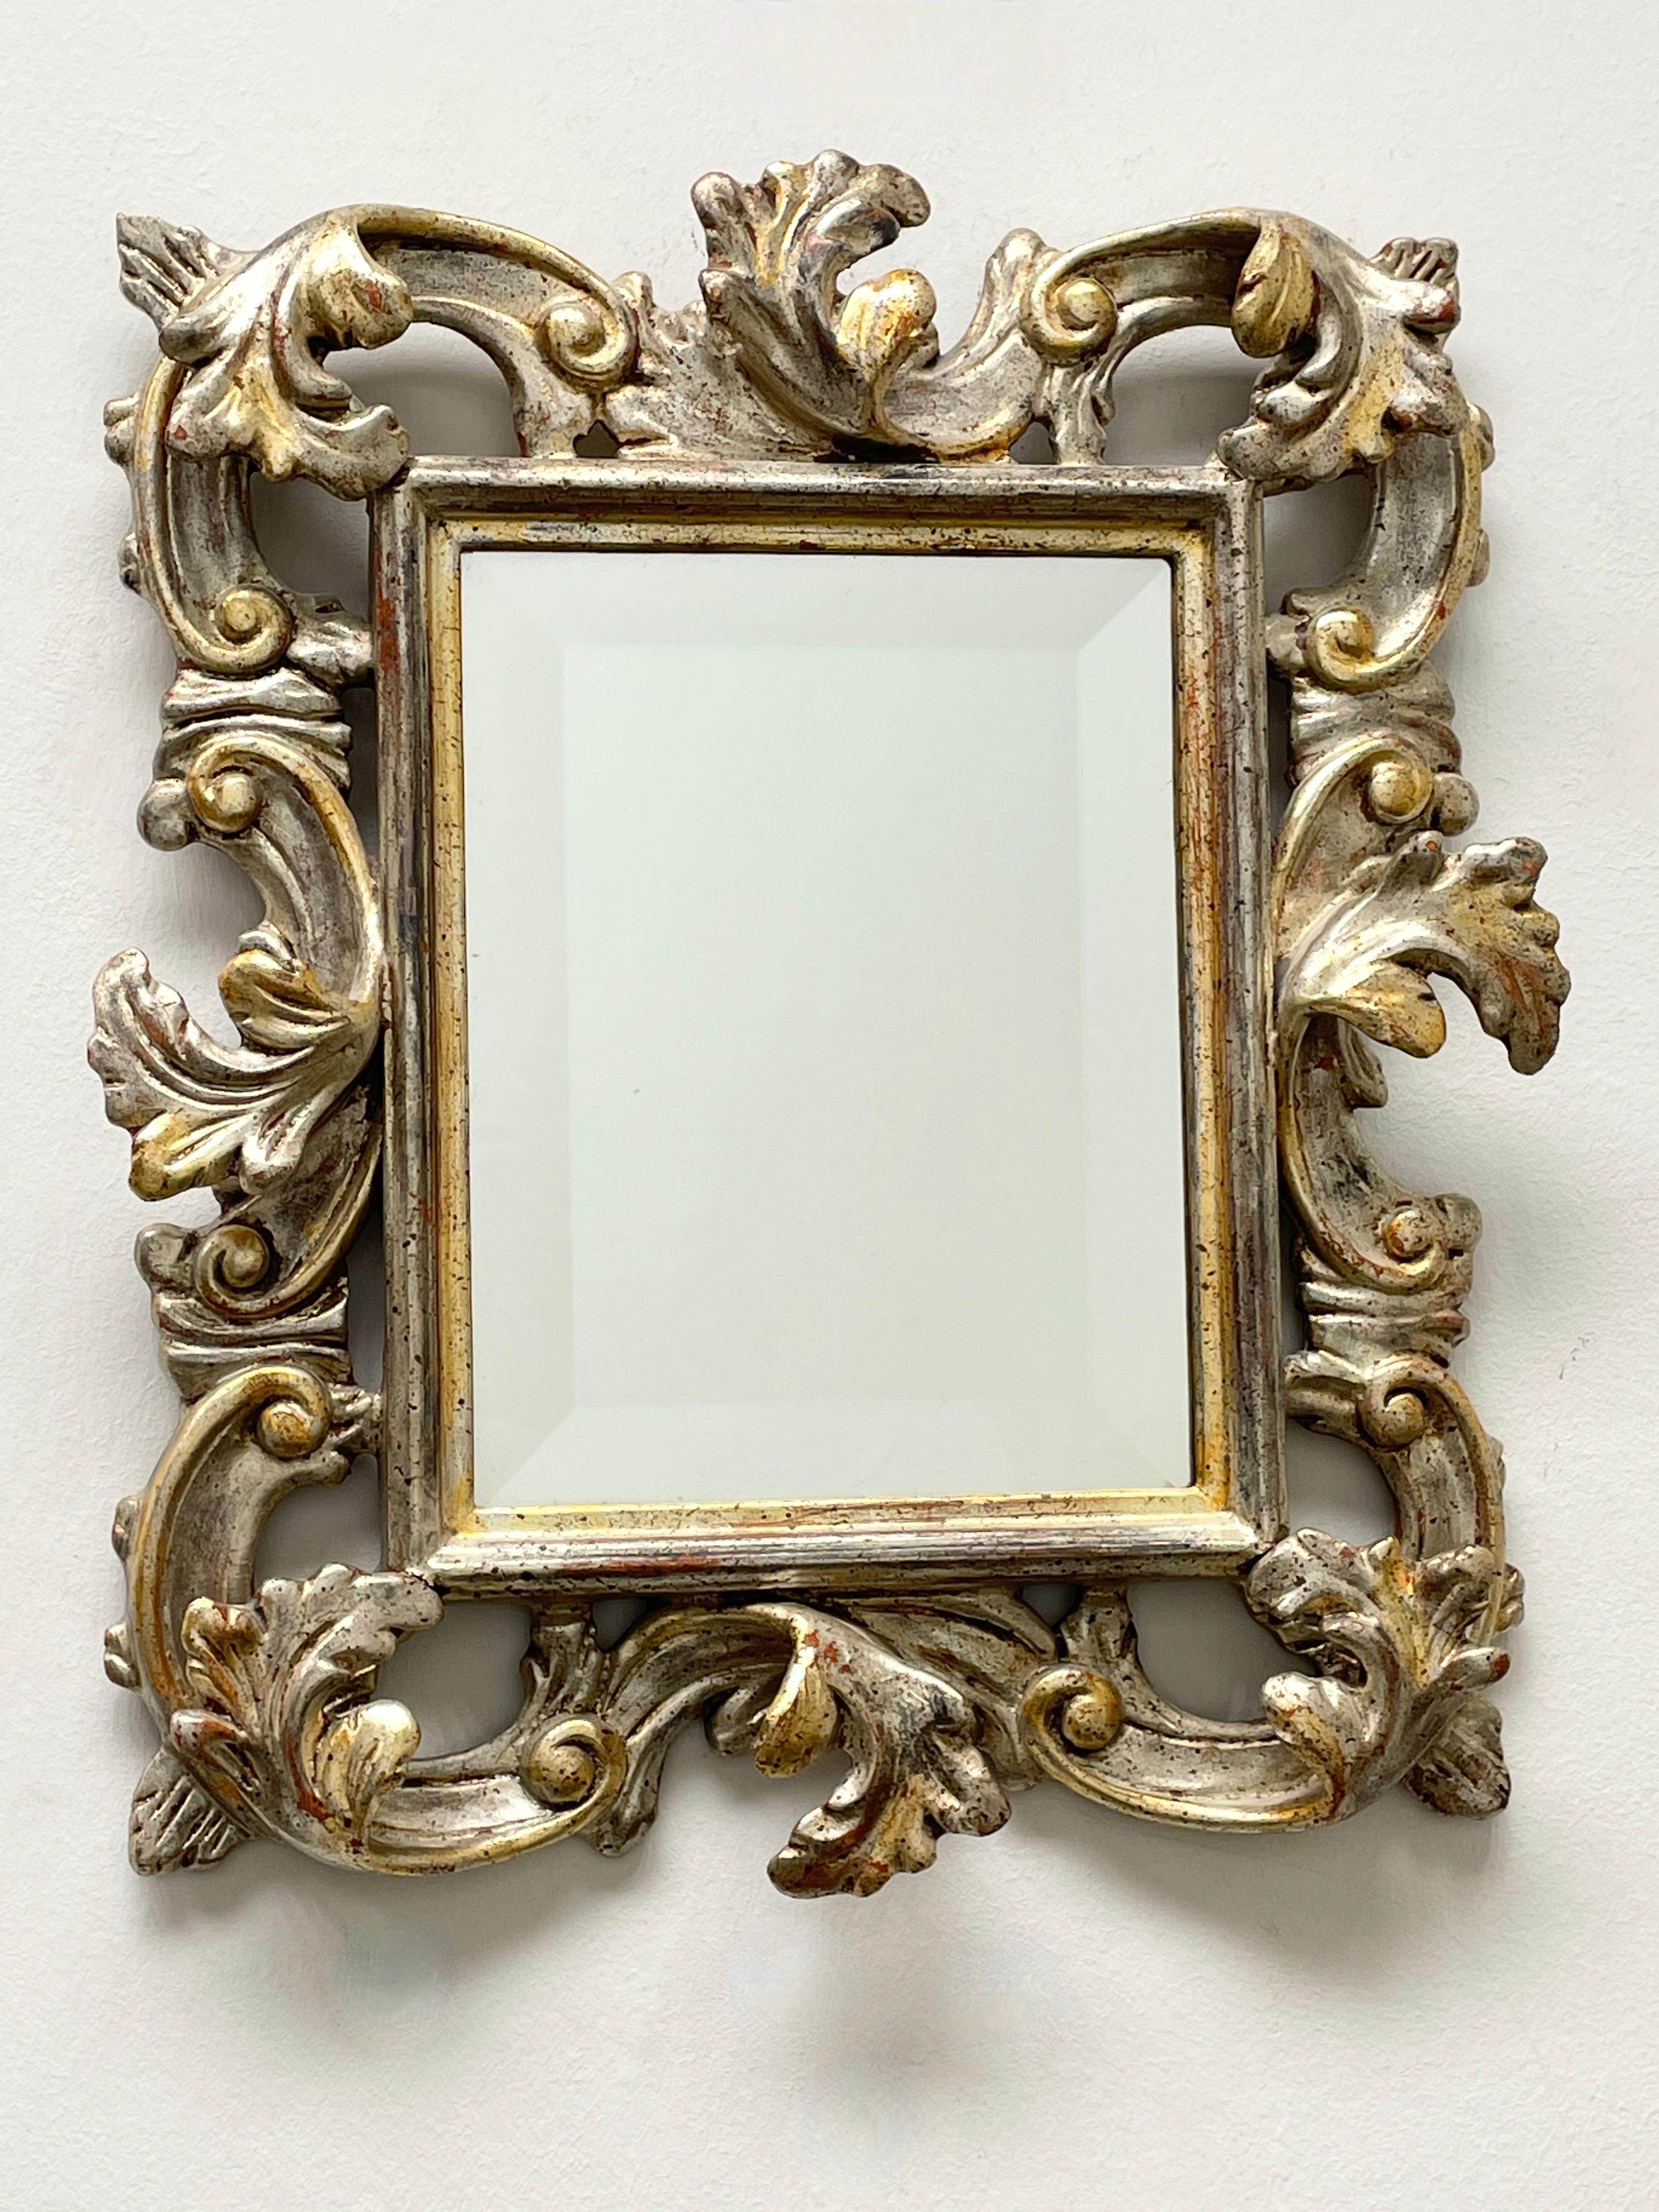 Superbe miroir en faïence de style Hollywood Regency. Le cadre en bois sculpté à la main, doré et argenté, entoure un miroir en verre. Le miroir lui-même mesure environ 9 pouces de haut et 7 pouces de large. Fabriqué en Allemagne, dans les années 30